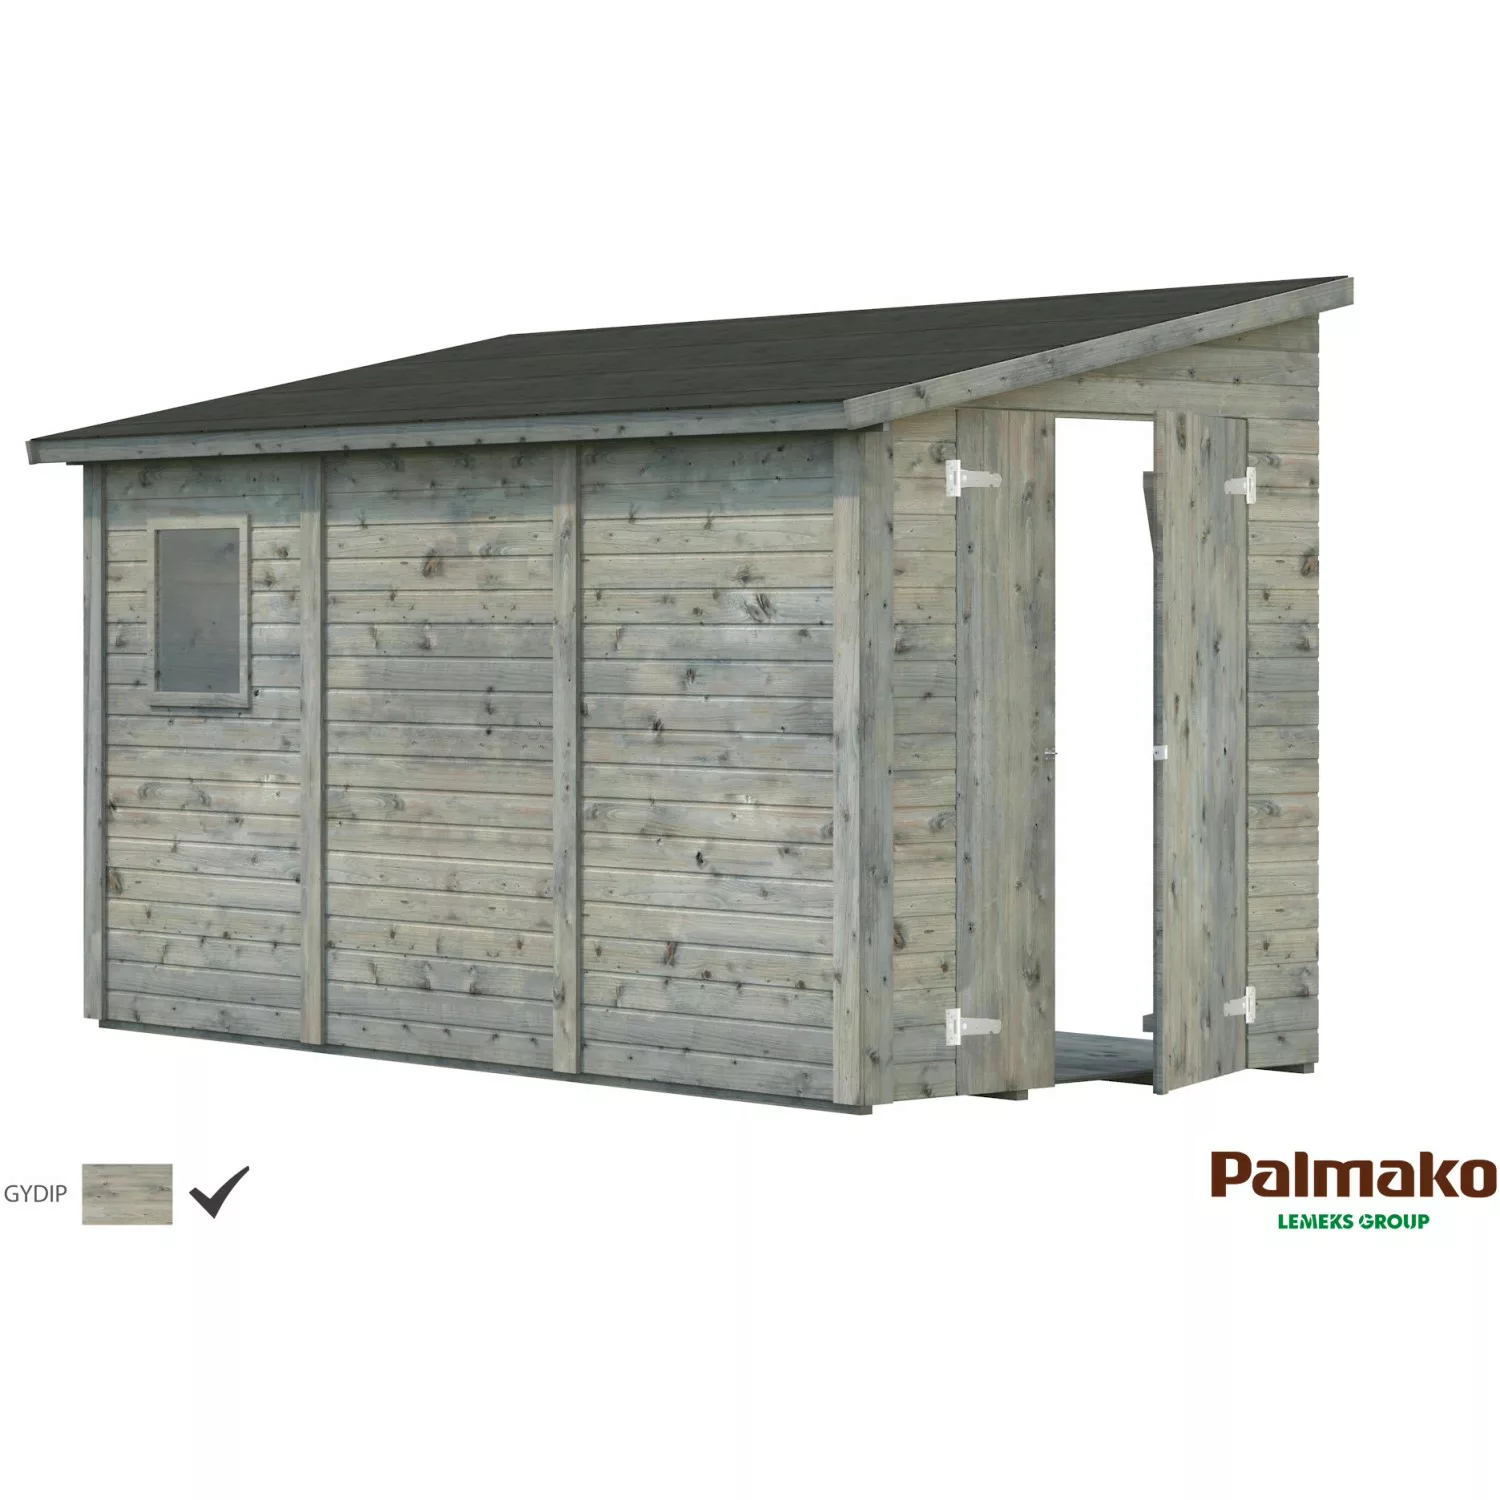 Palmako Mia Holz-Gartenhaus Grau Pultdach Tauchgrundiert 333 cm x 165 cm günstig online kaufen